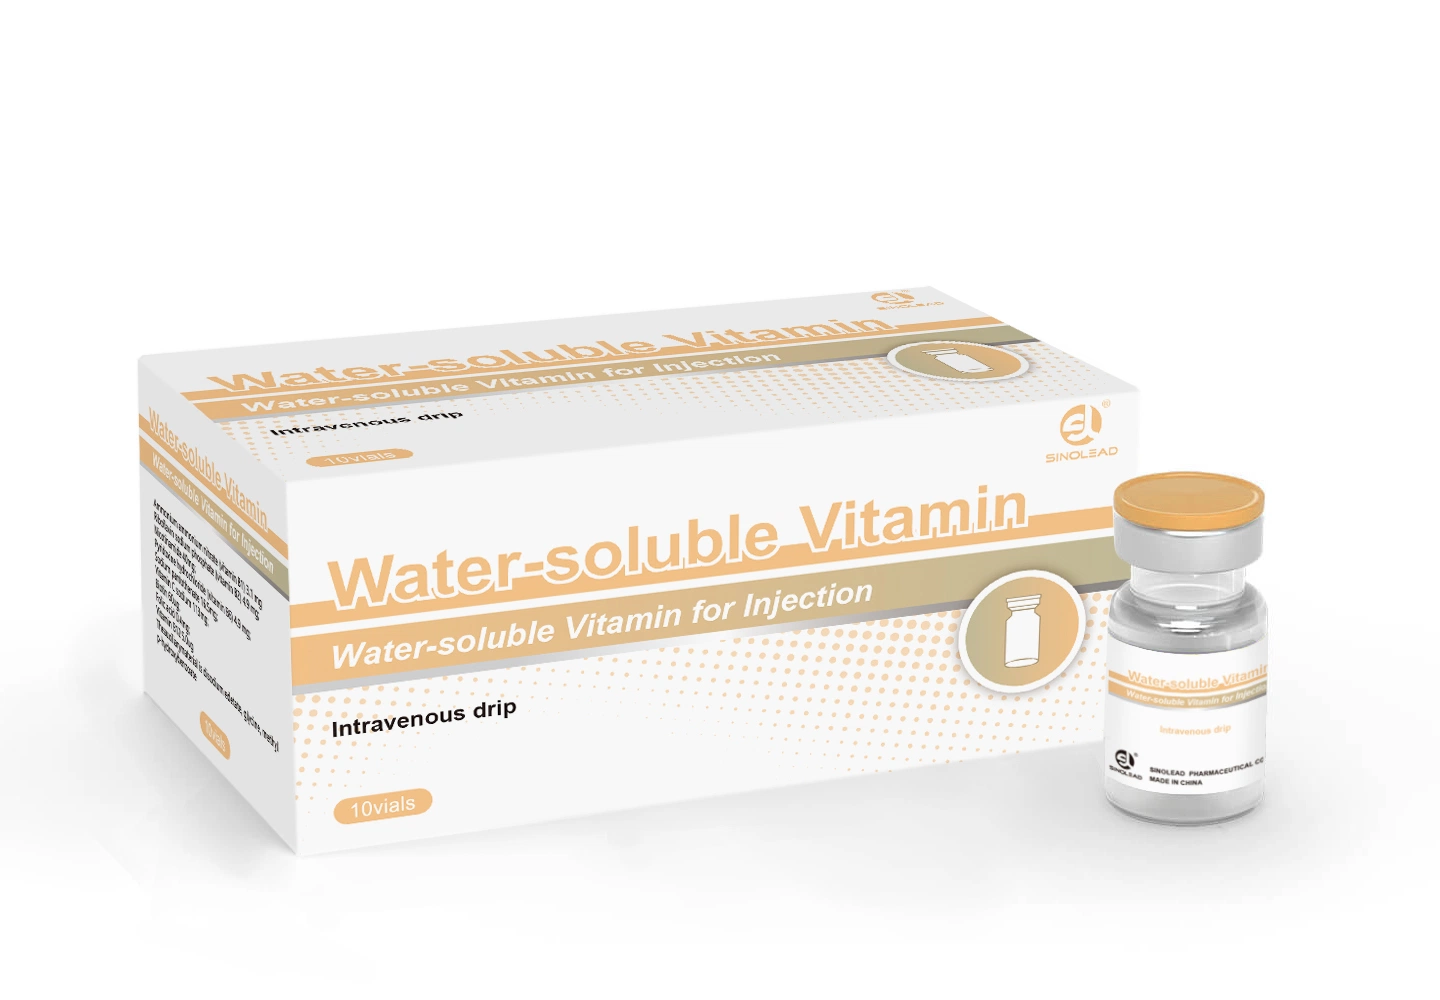 Vitamina soluble en agua para inyección